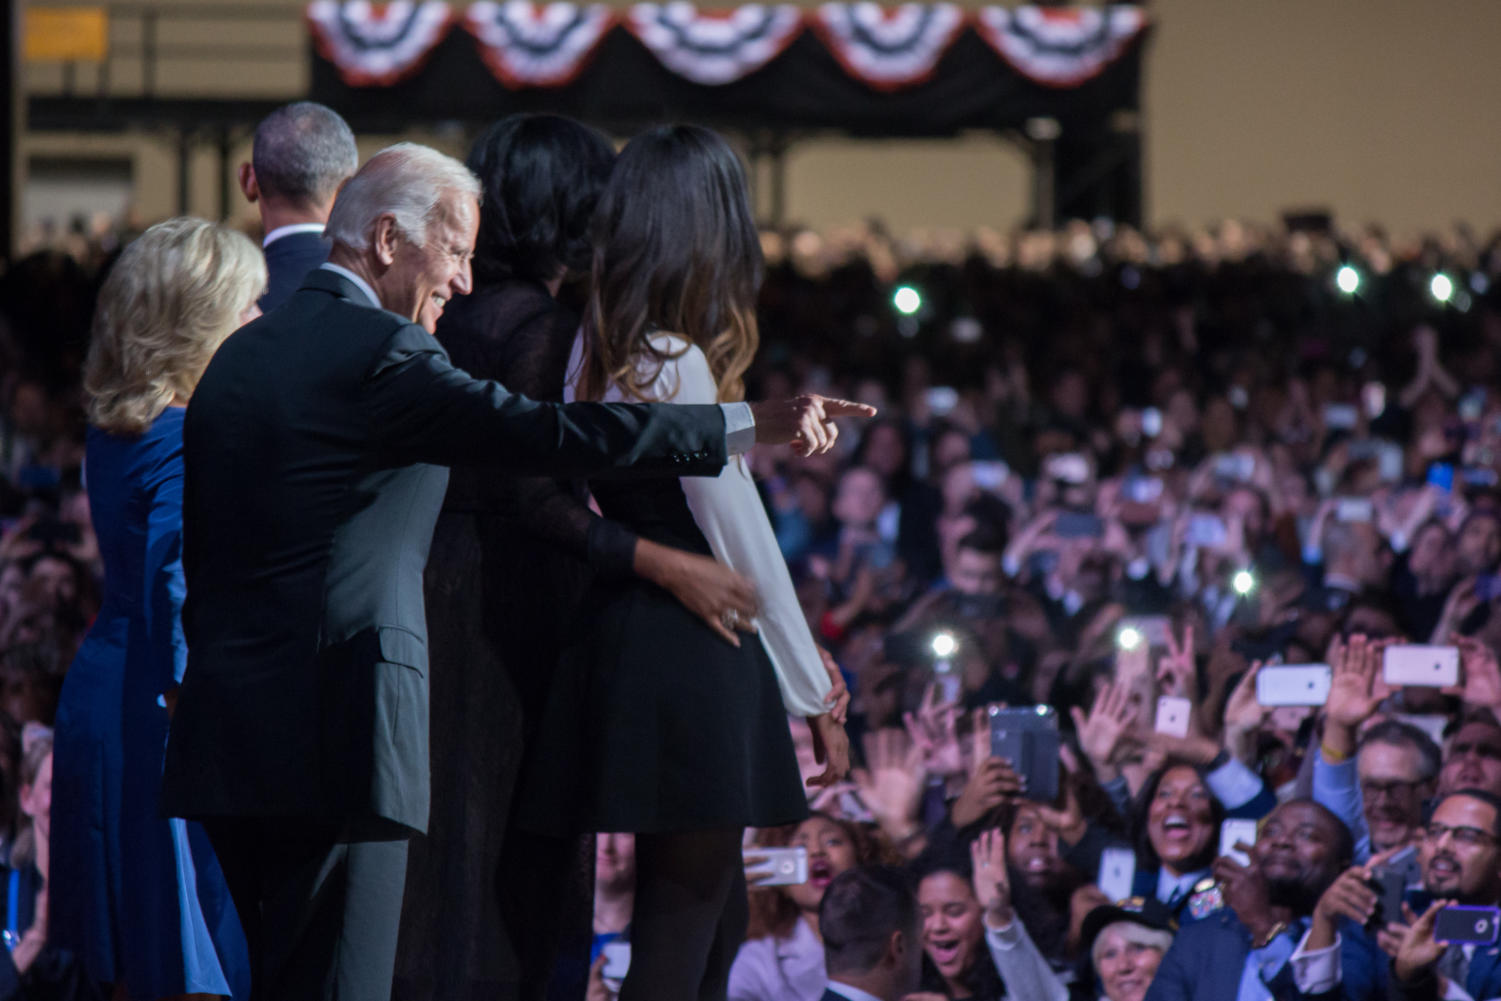 Biden greets the crowd.